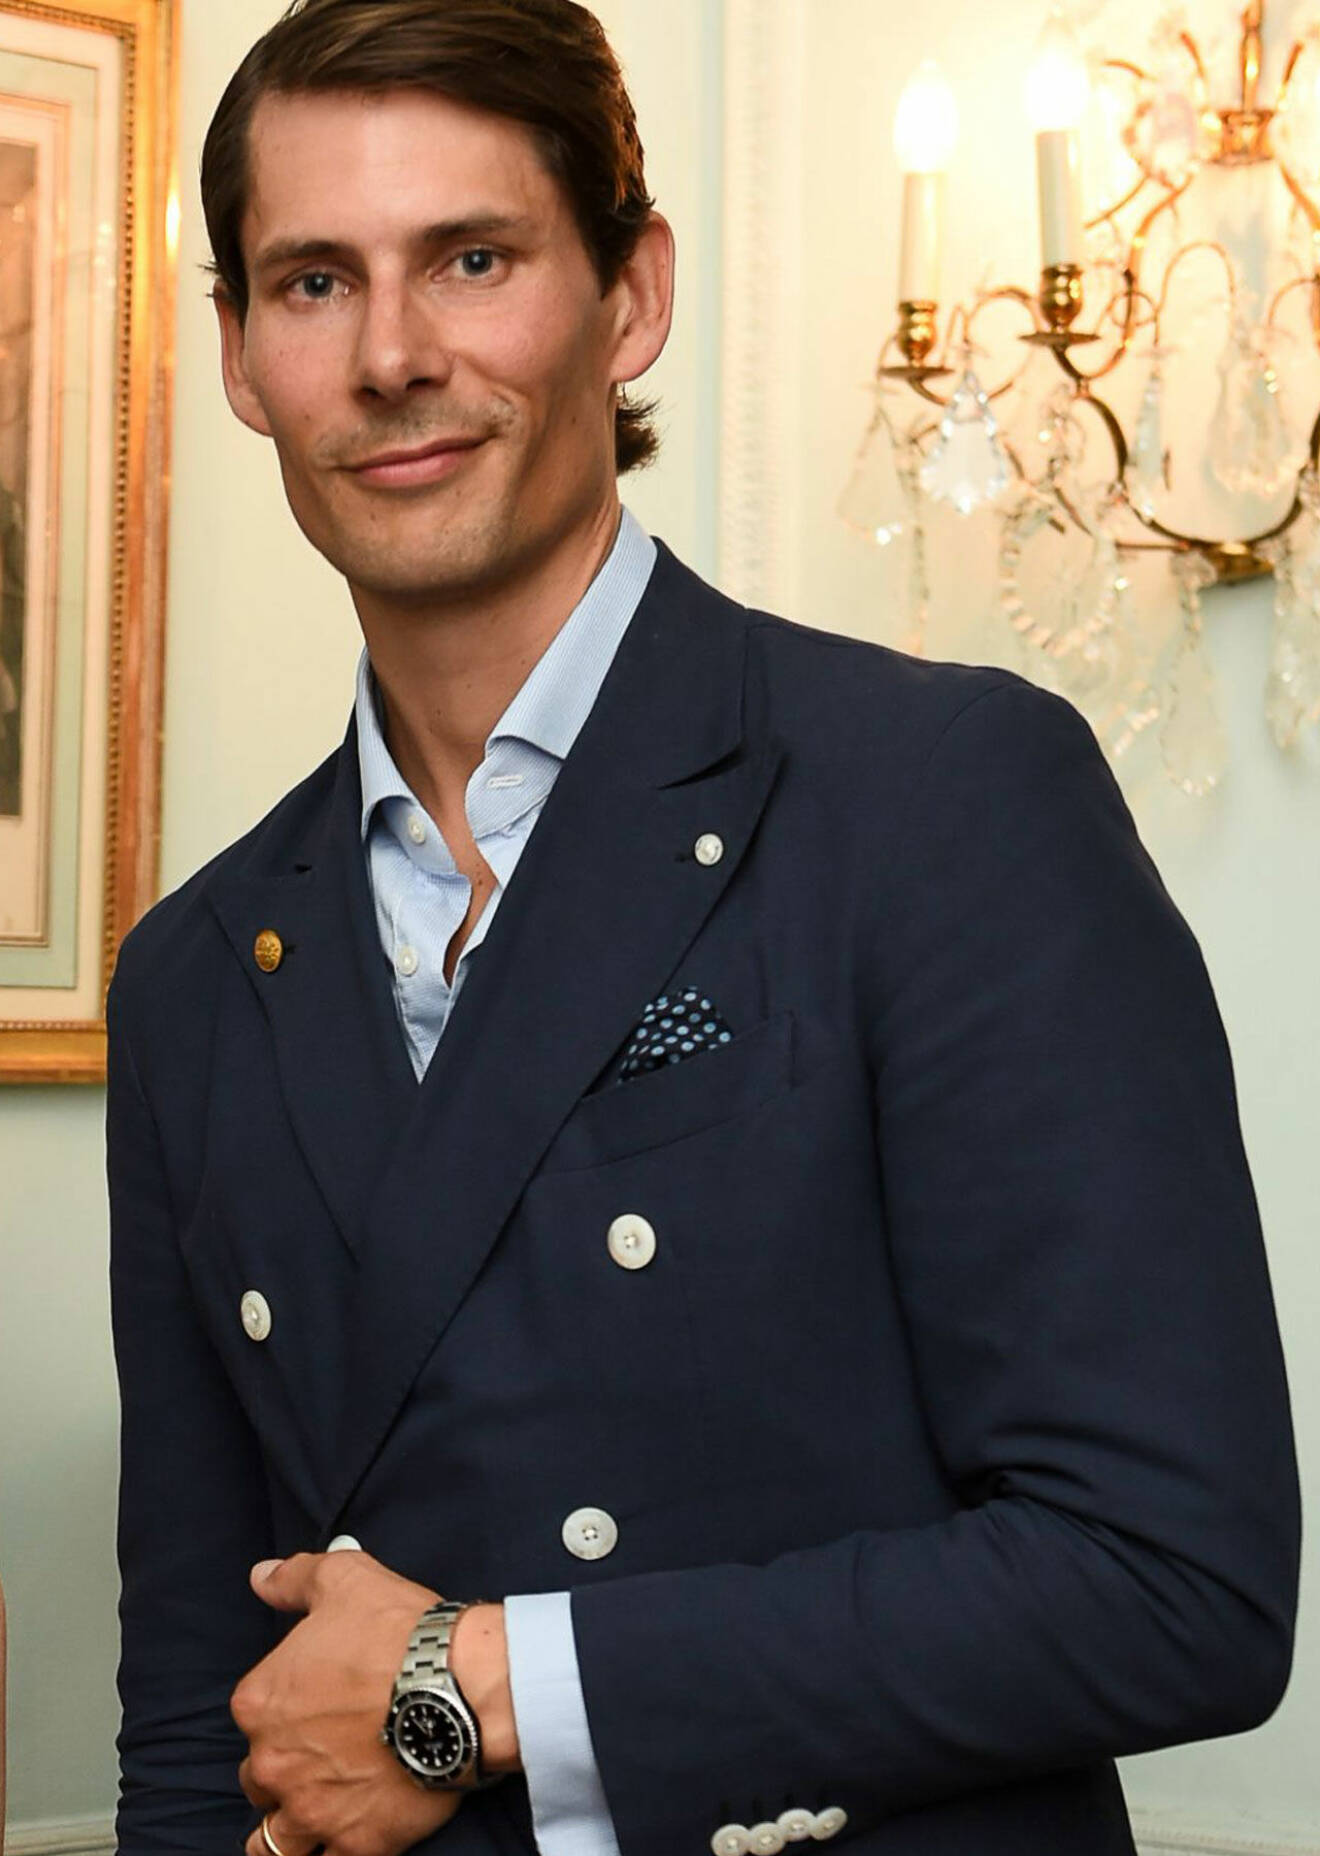 Prinsens lunchkompis Viktor Blomqvist, vd för Skultuna.